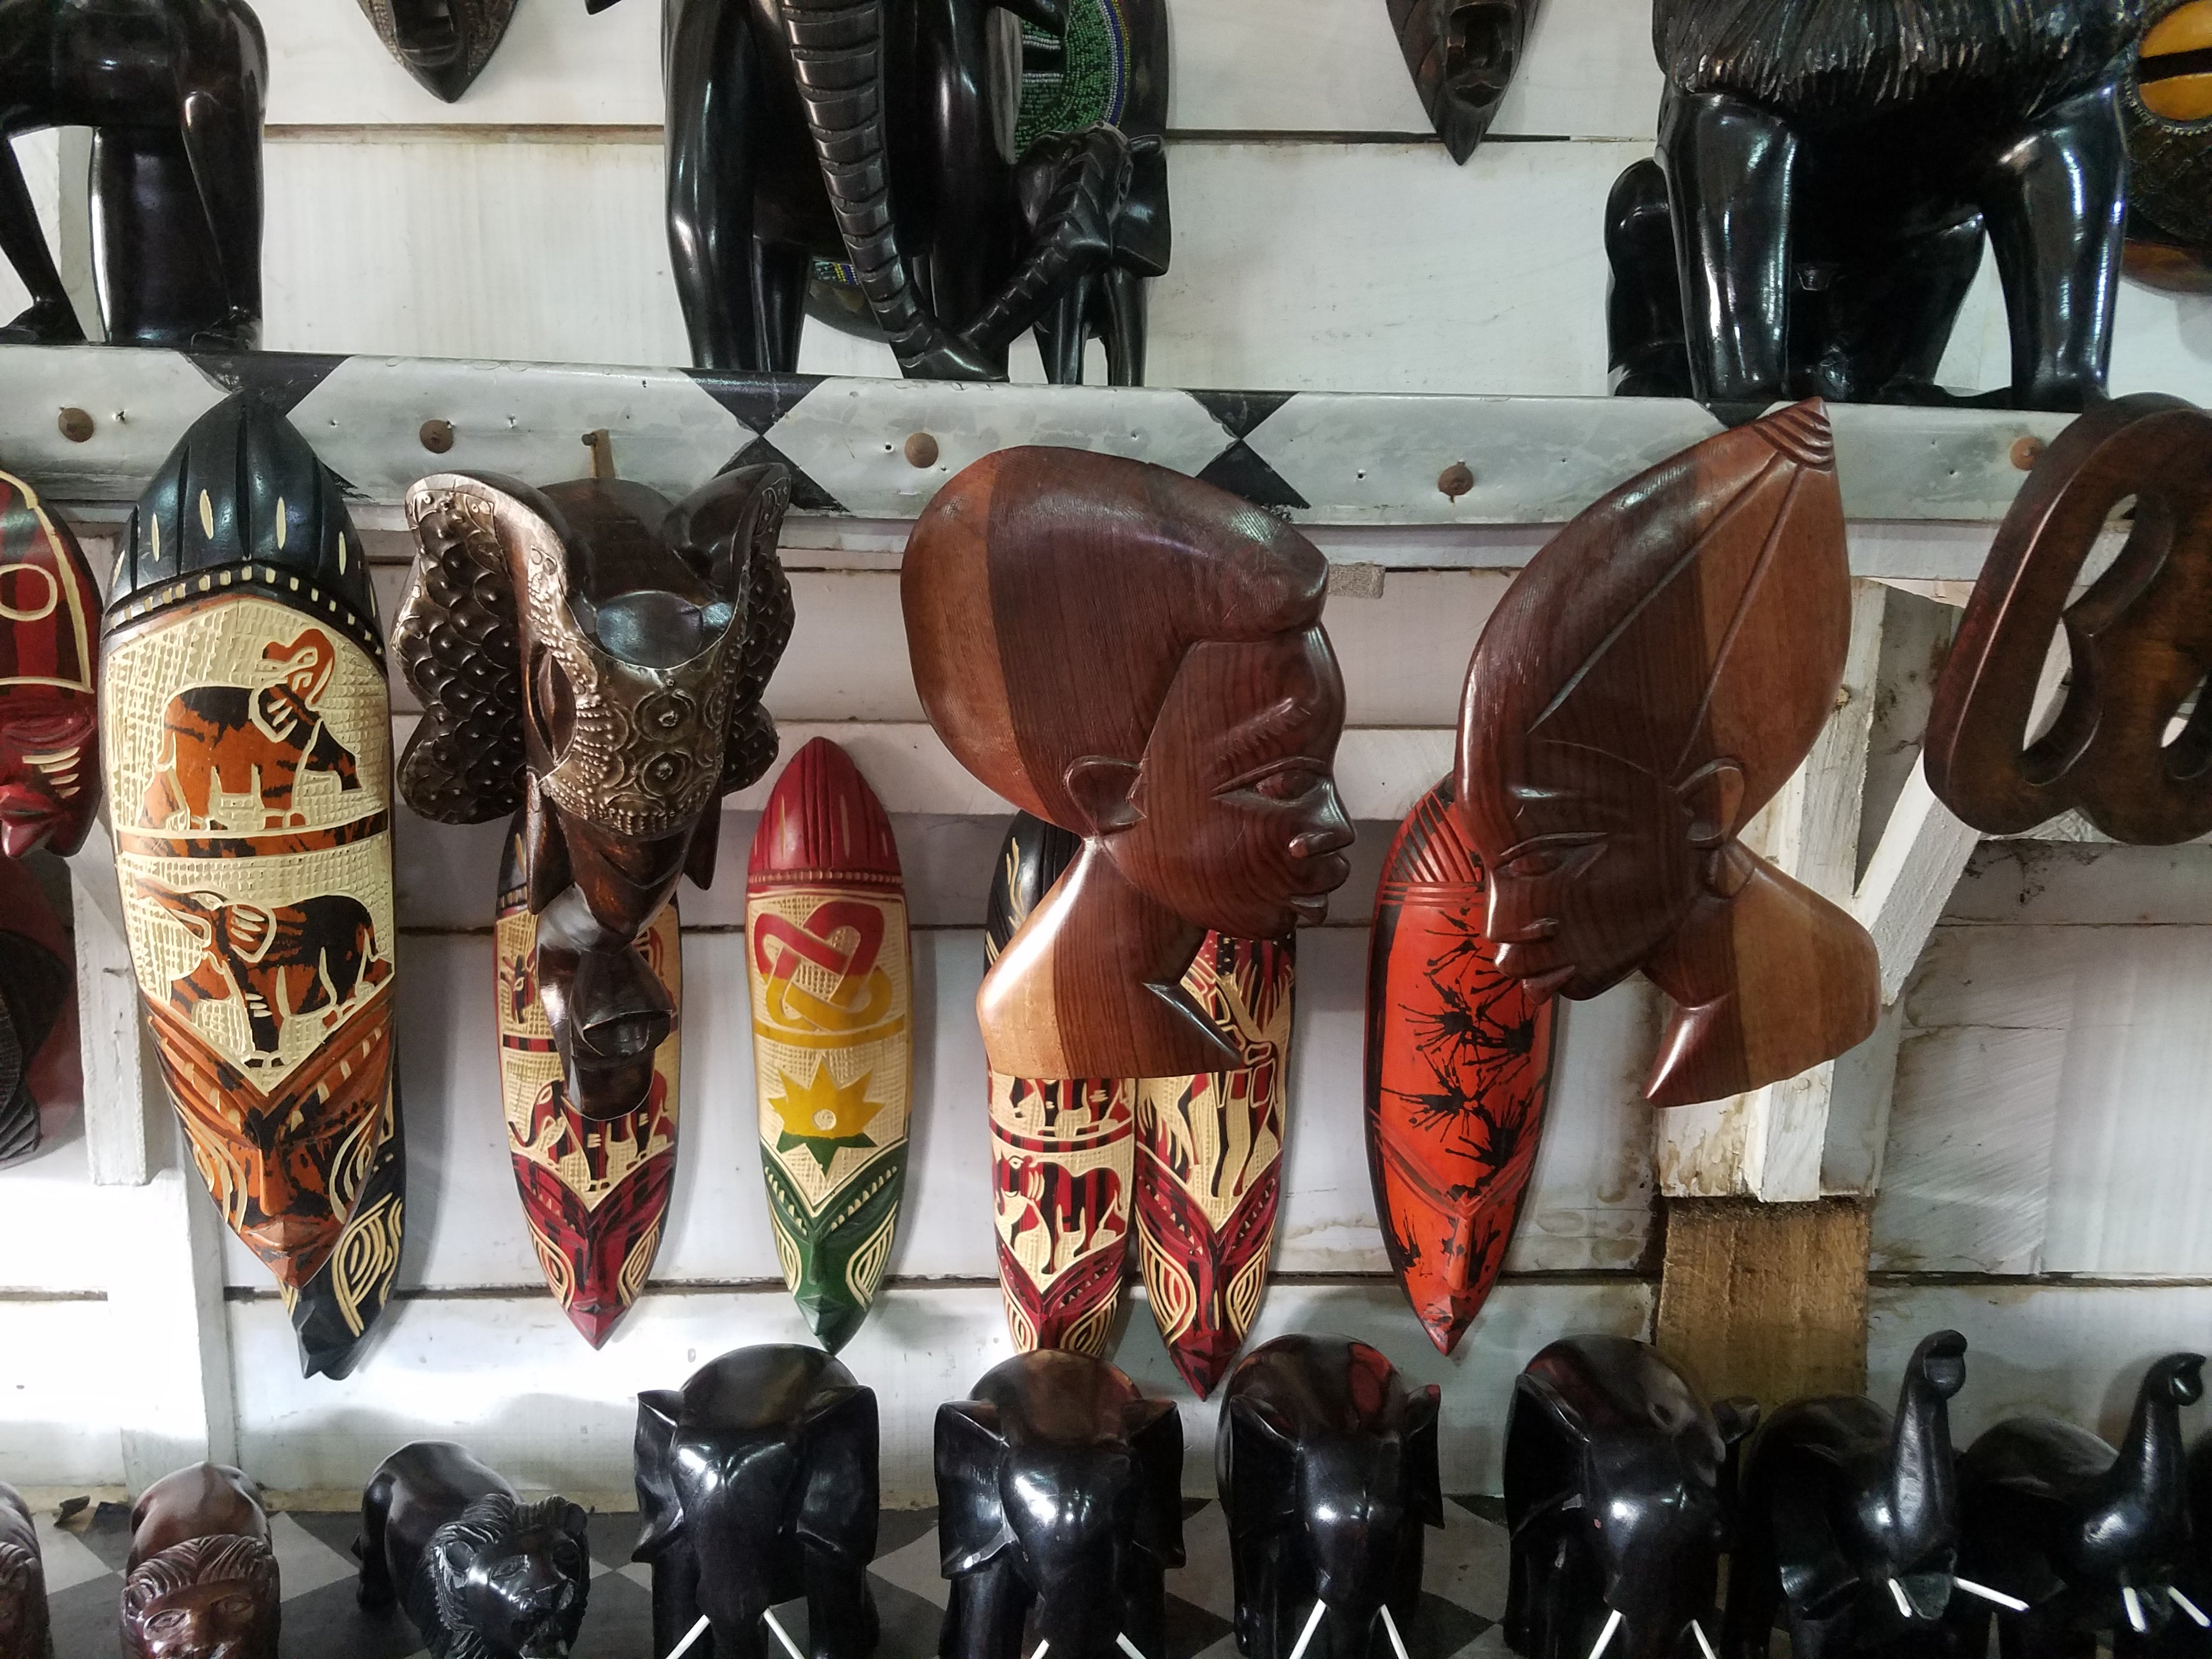 African Wood Carvings